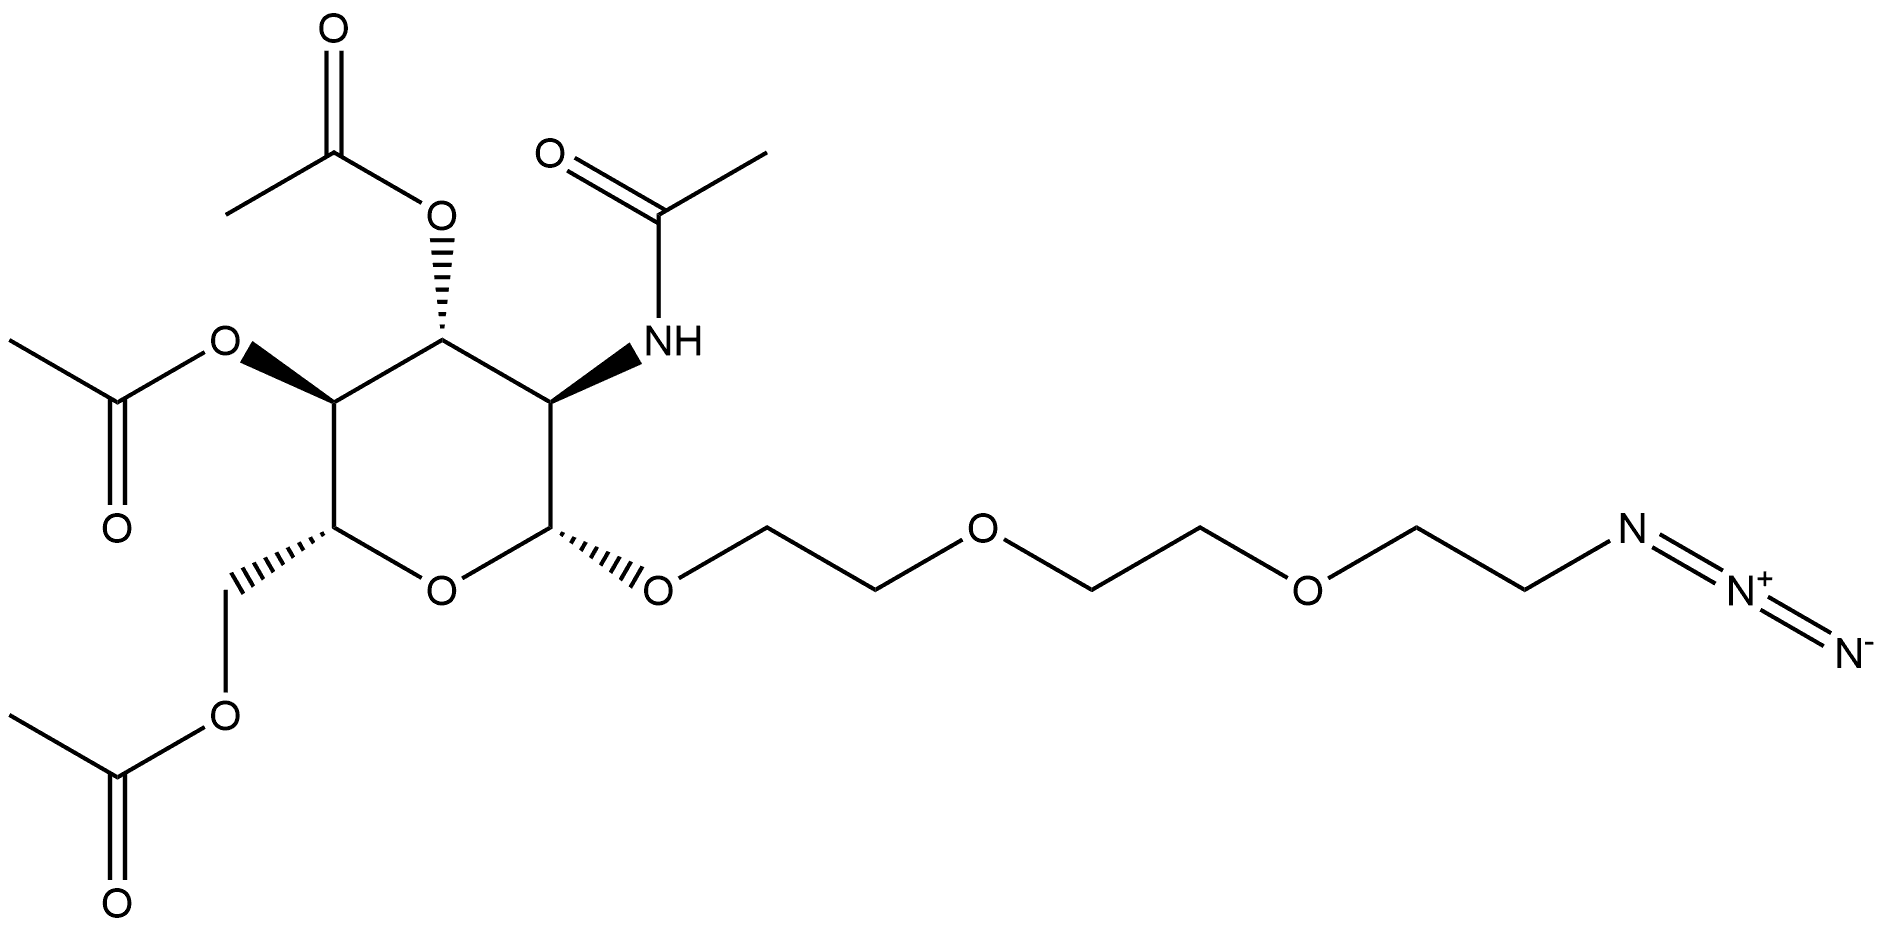 86520-53-8 β-D-Glucopyranoside, 2-[2-(2-azidoethoxy)ethoxy]ethyl 2-(acetylamino)-2-deoxy-, 3,4,6-triacetate